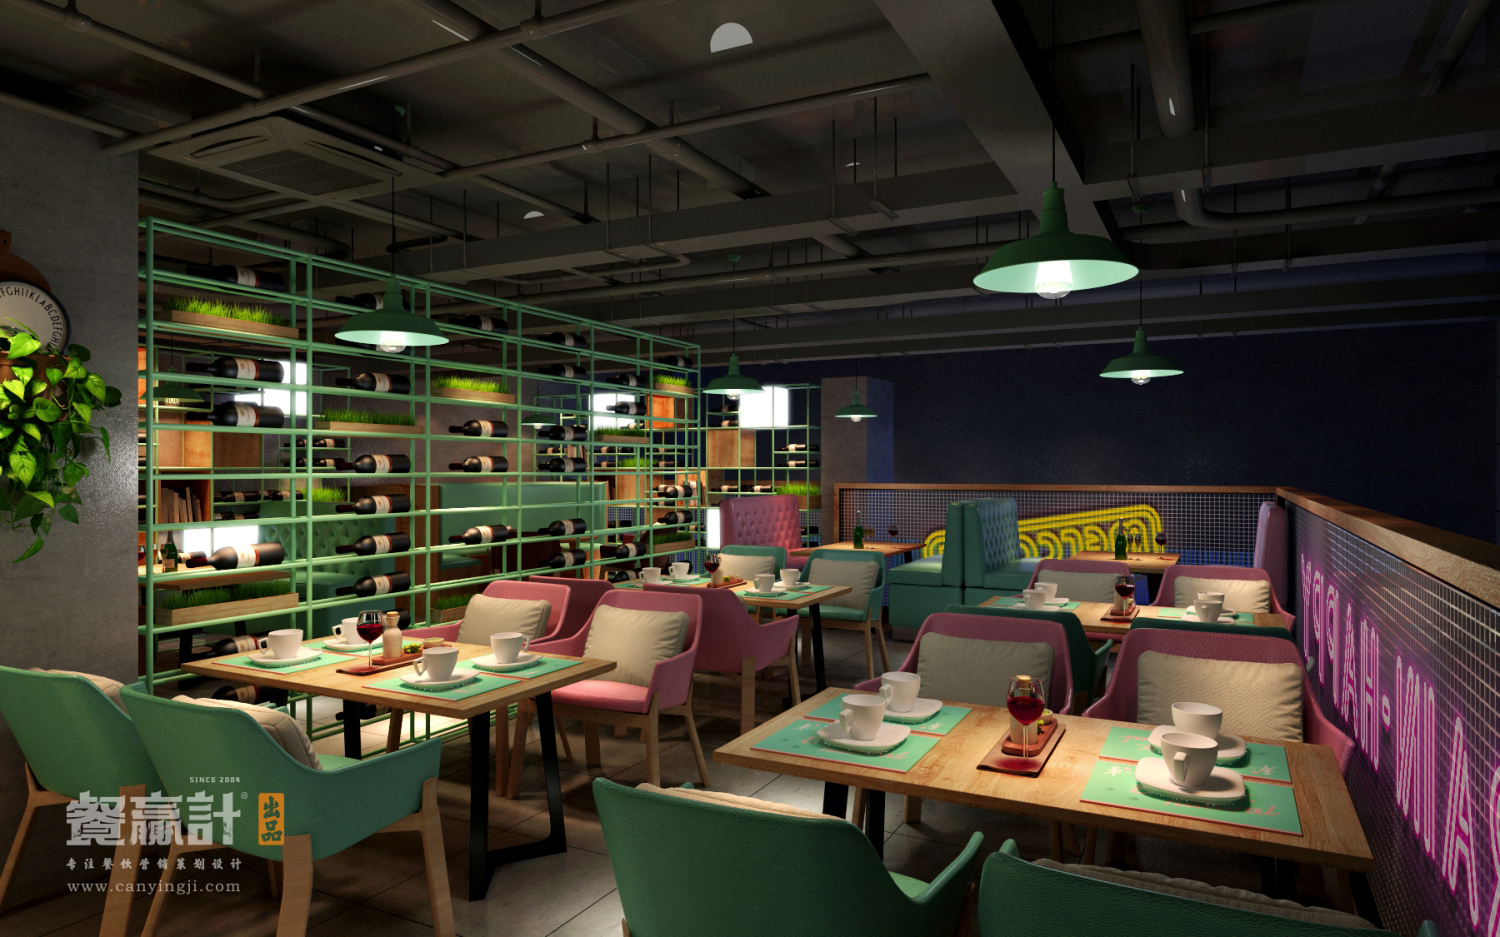 禾π生态菜餐厅空间装修效果图